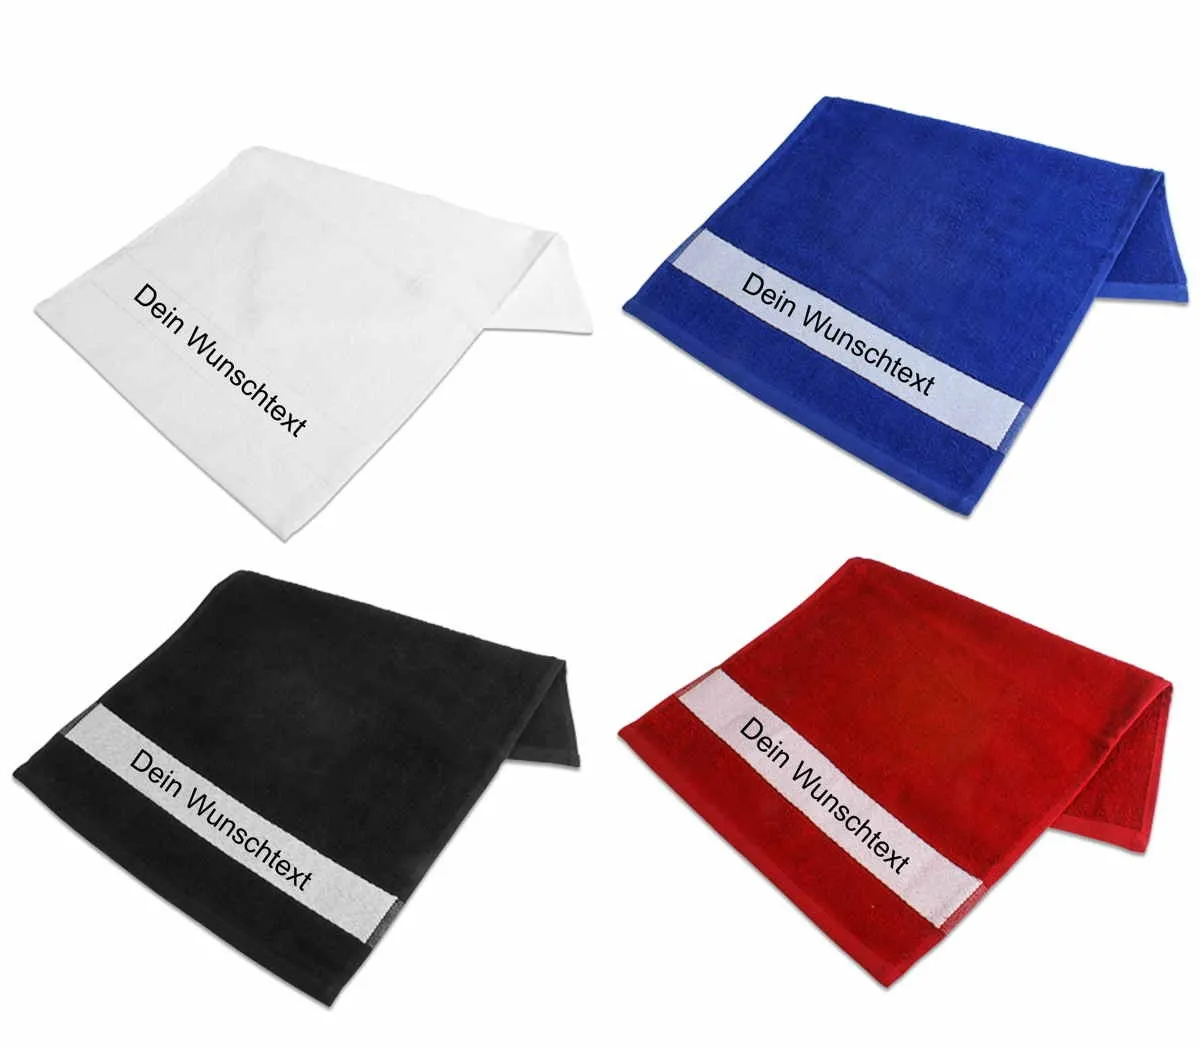 Gæstehåndklæde trykt med navn eller tekst efter eget valg